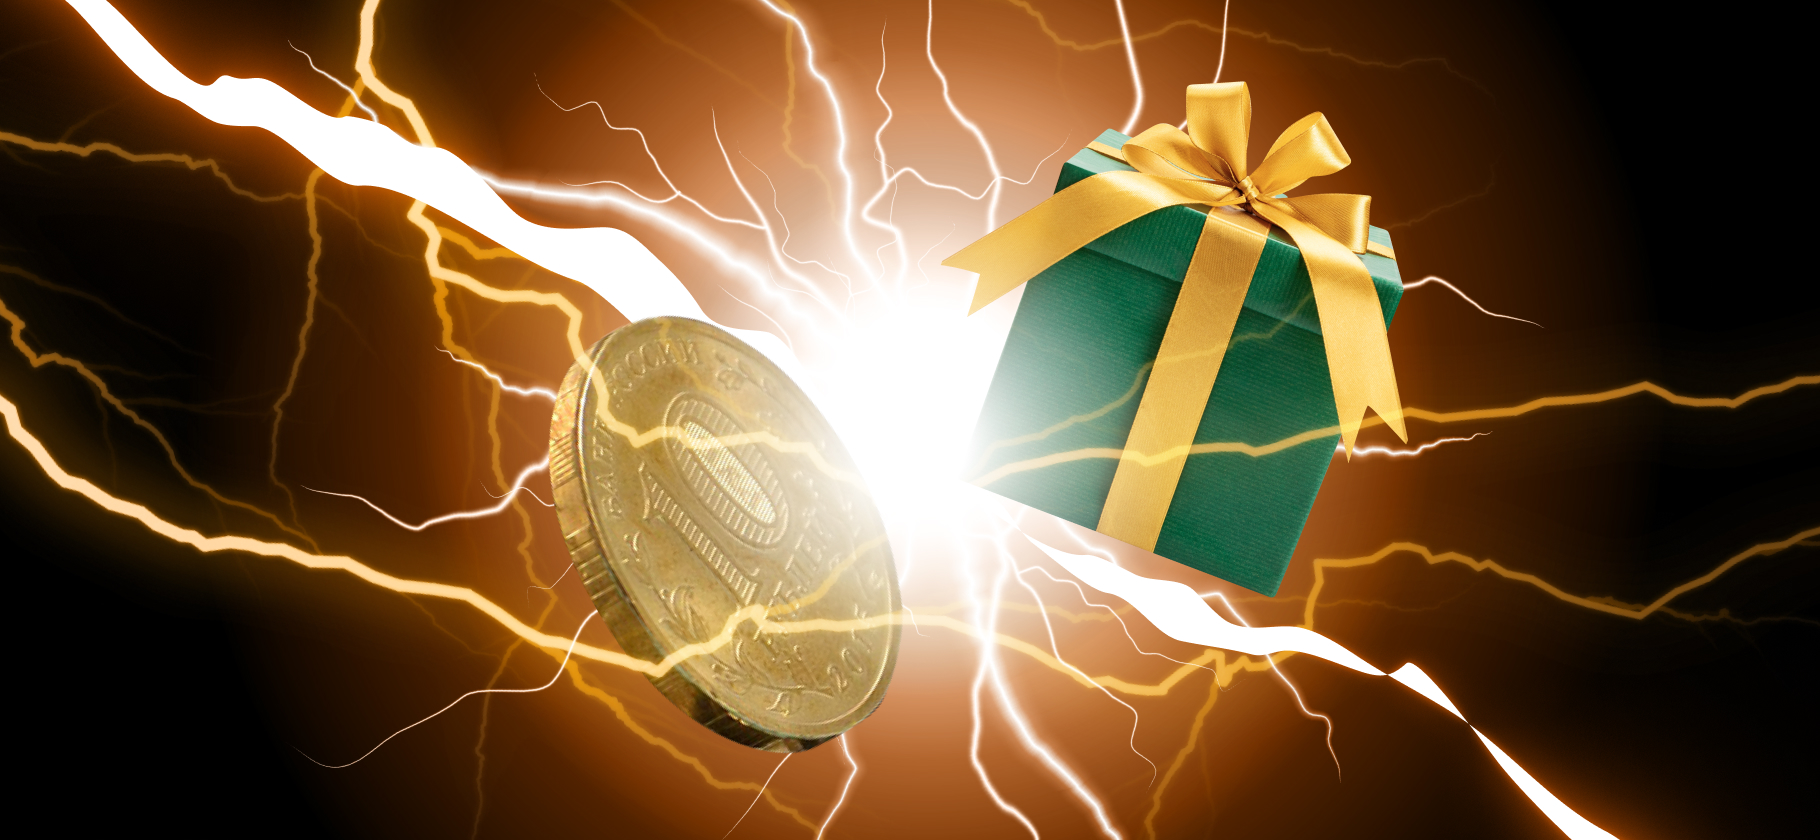 Батл: подарить деньги vs обычный подарок